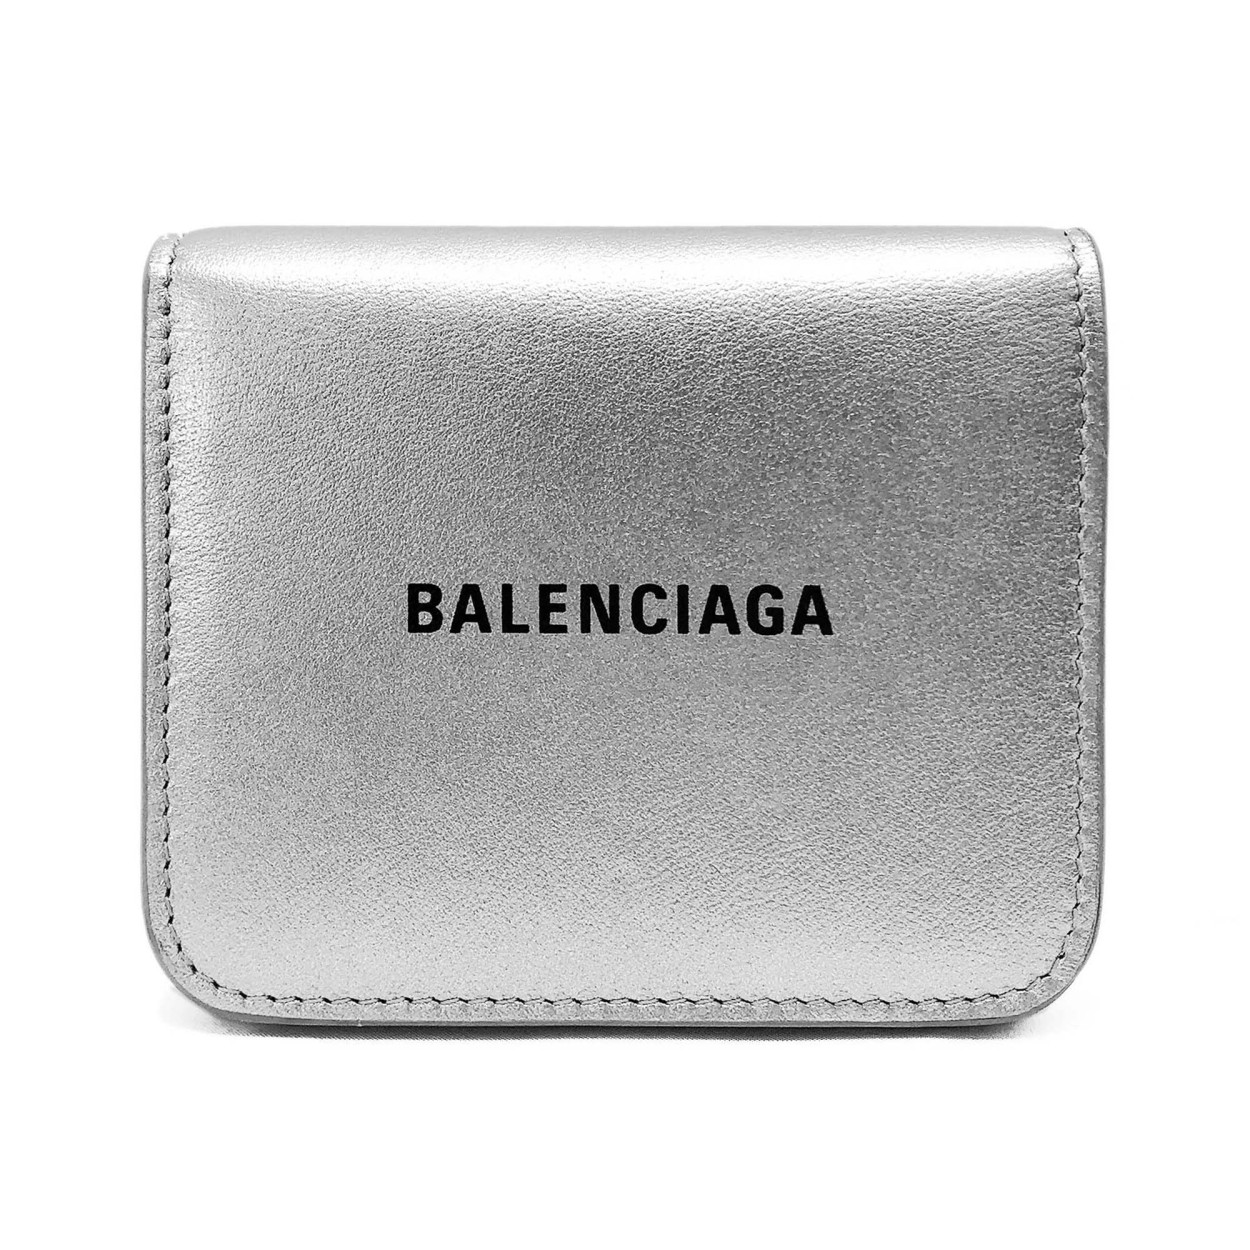 バレンシアガ 財布 BALENCIAGA 594216 1ND6W 8110 CASH